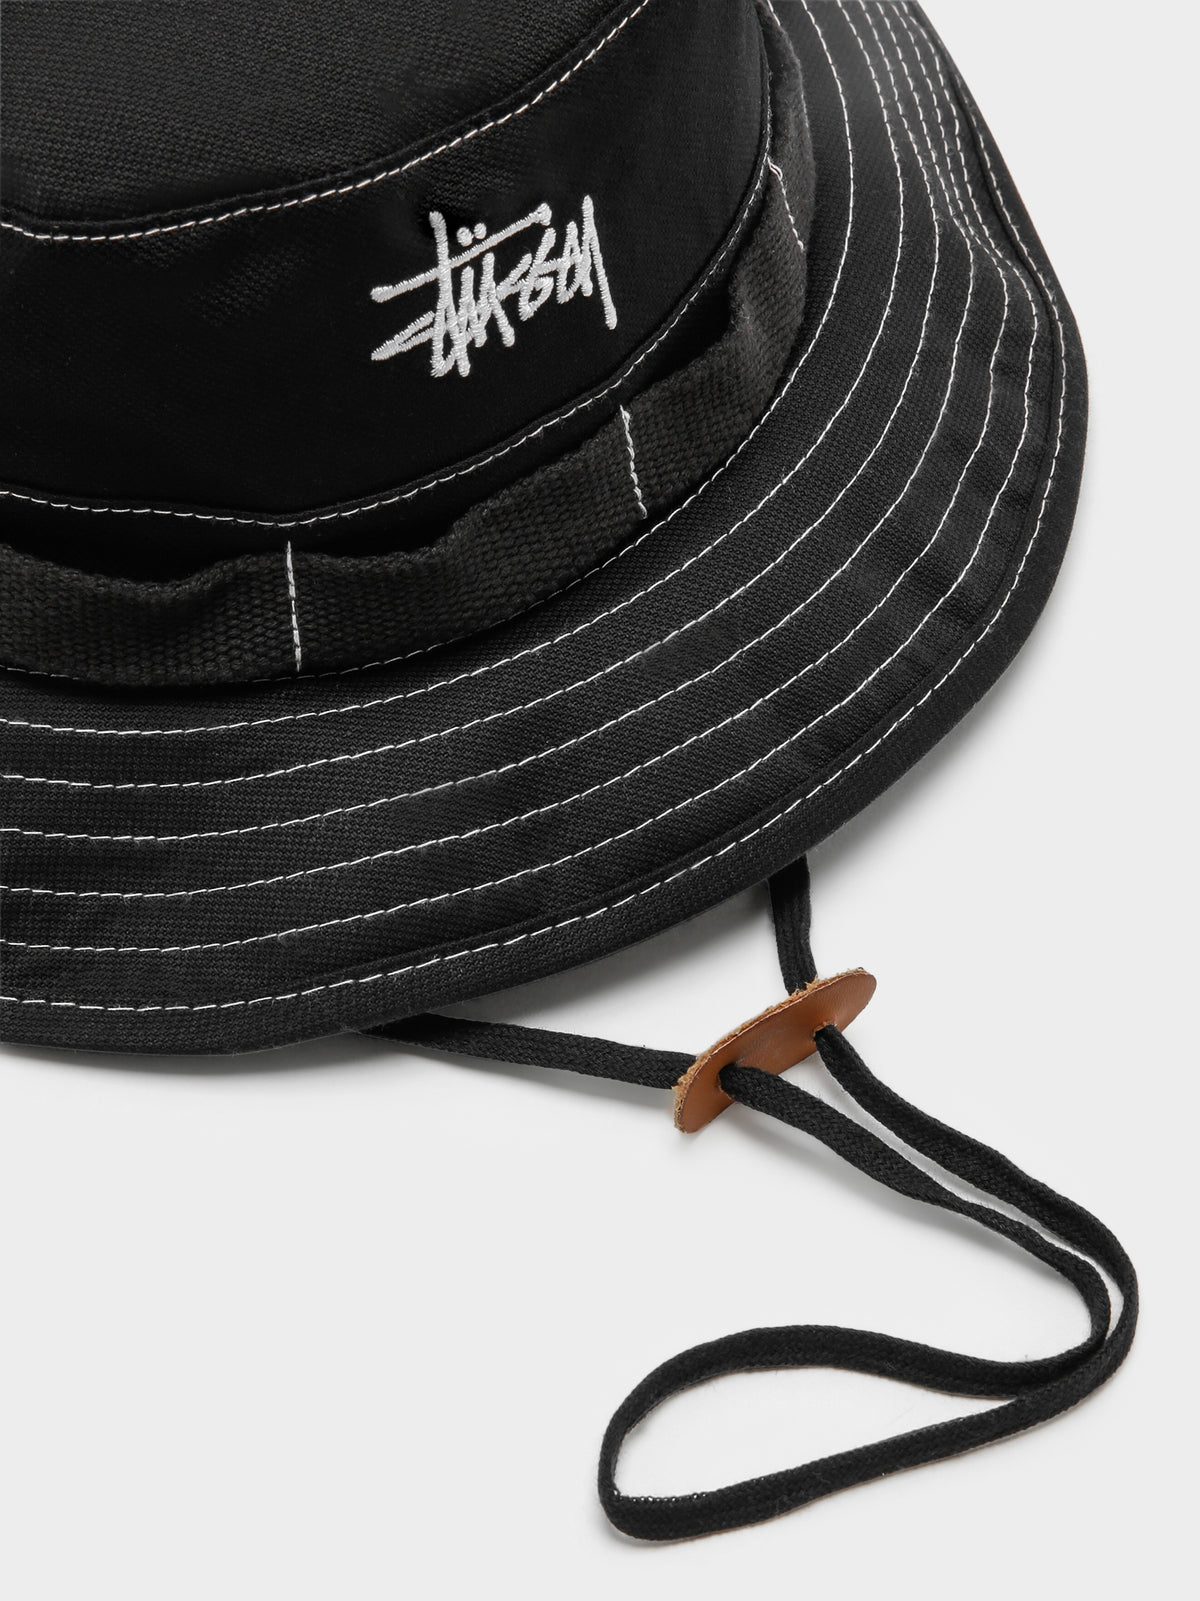 Contrast Topstitch Boonie Hat in Black